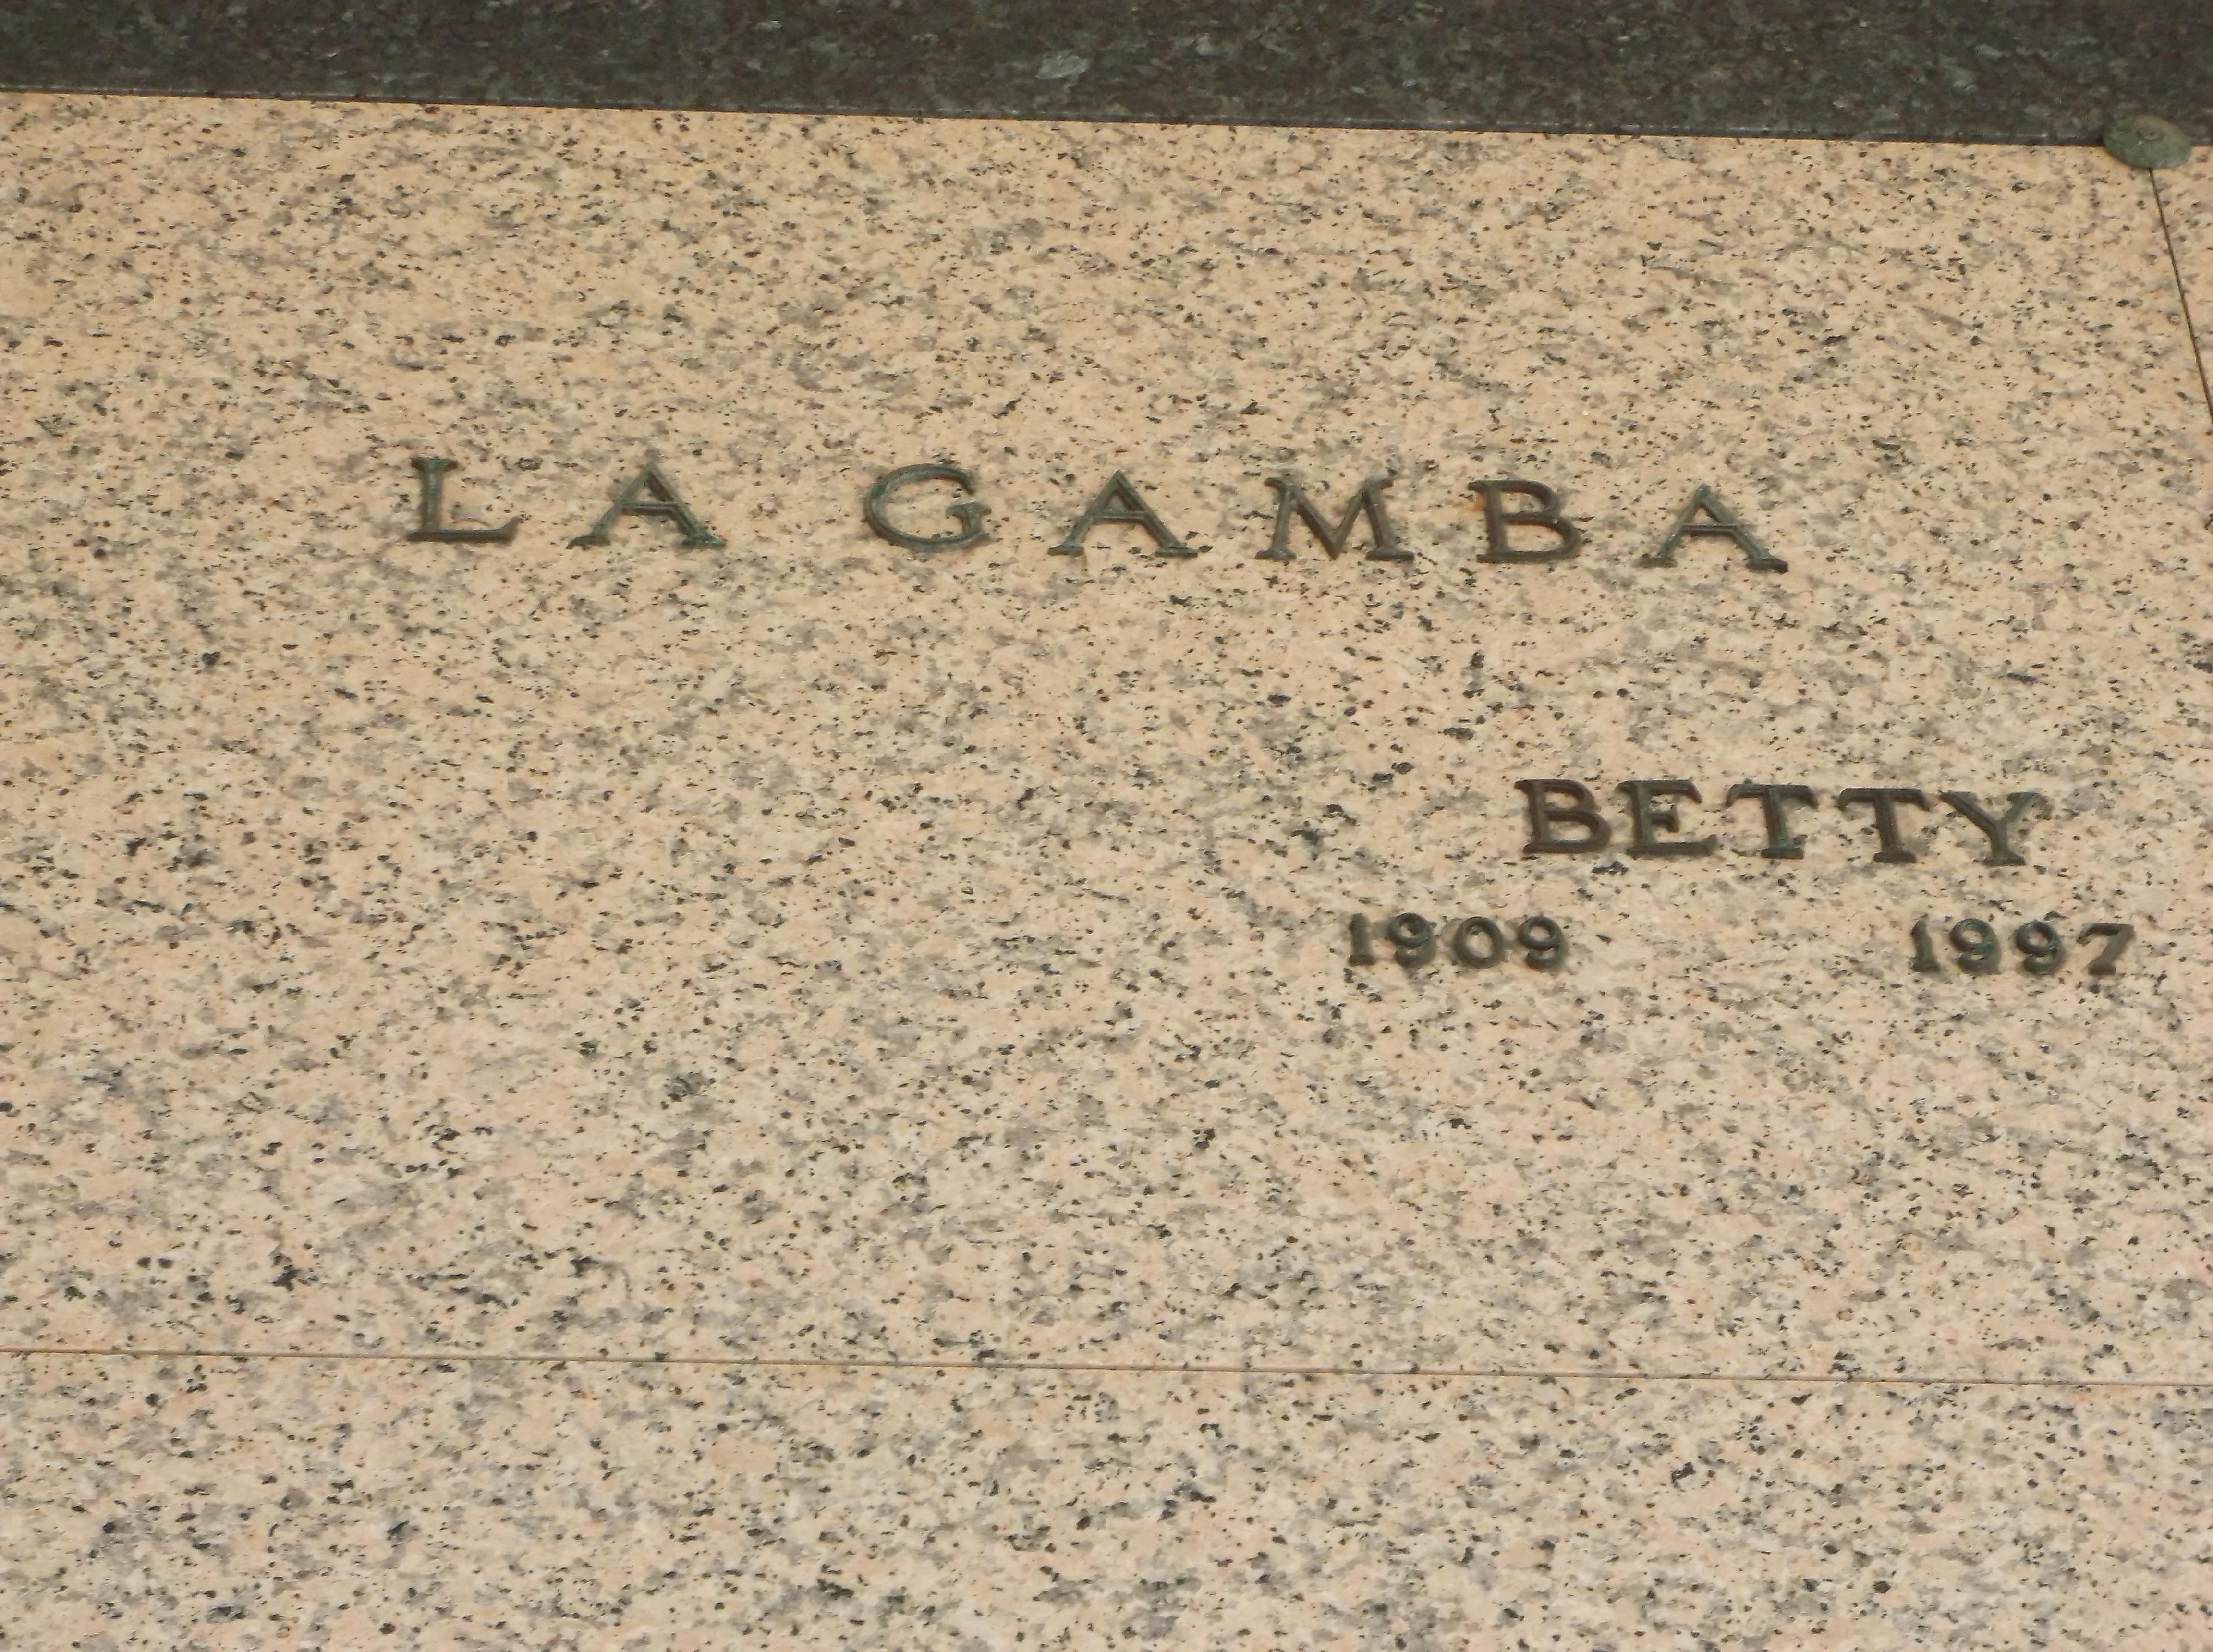 Betty La Gamba